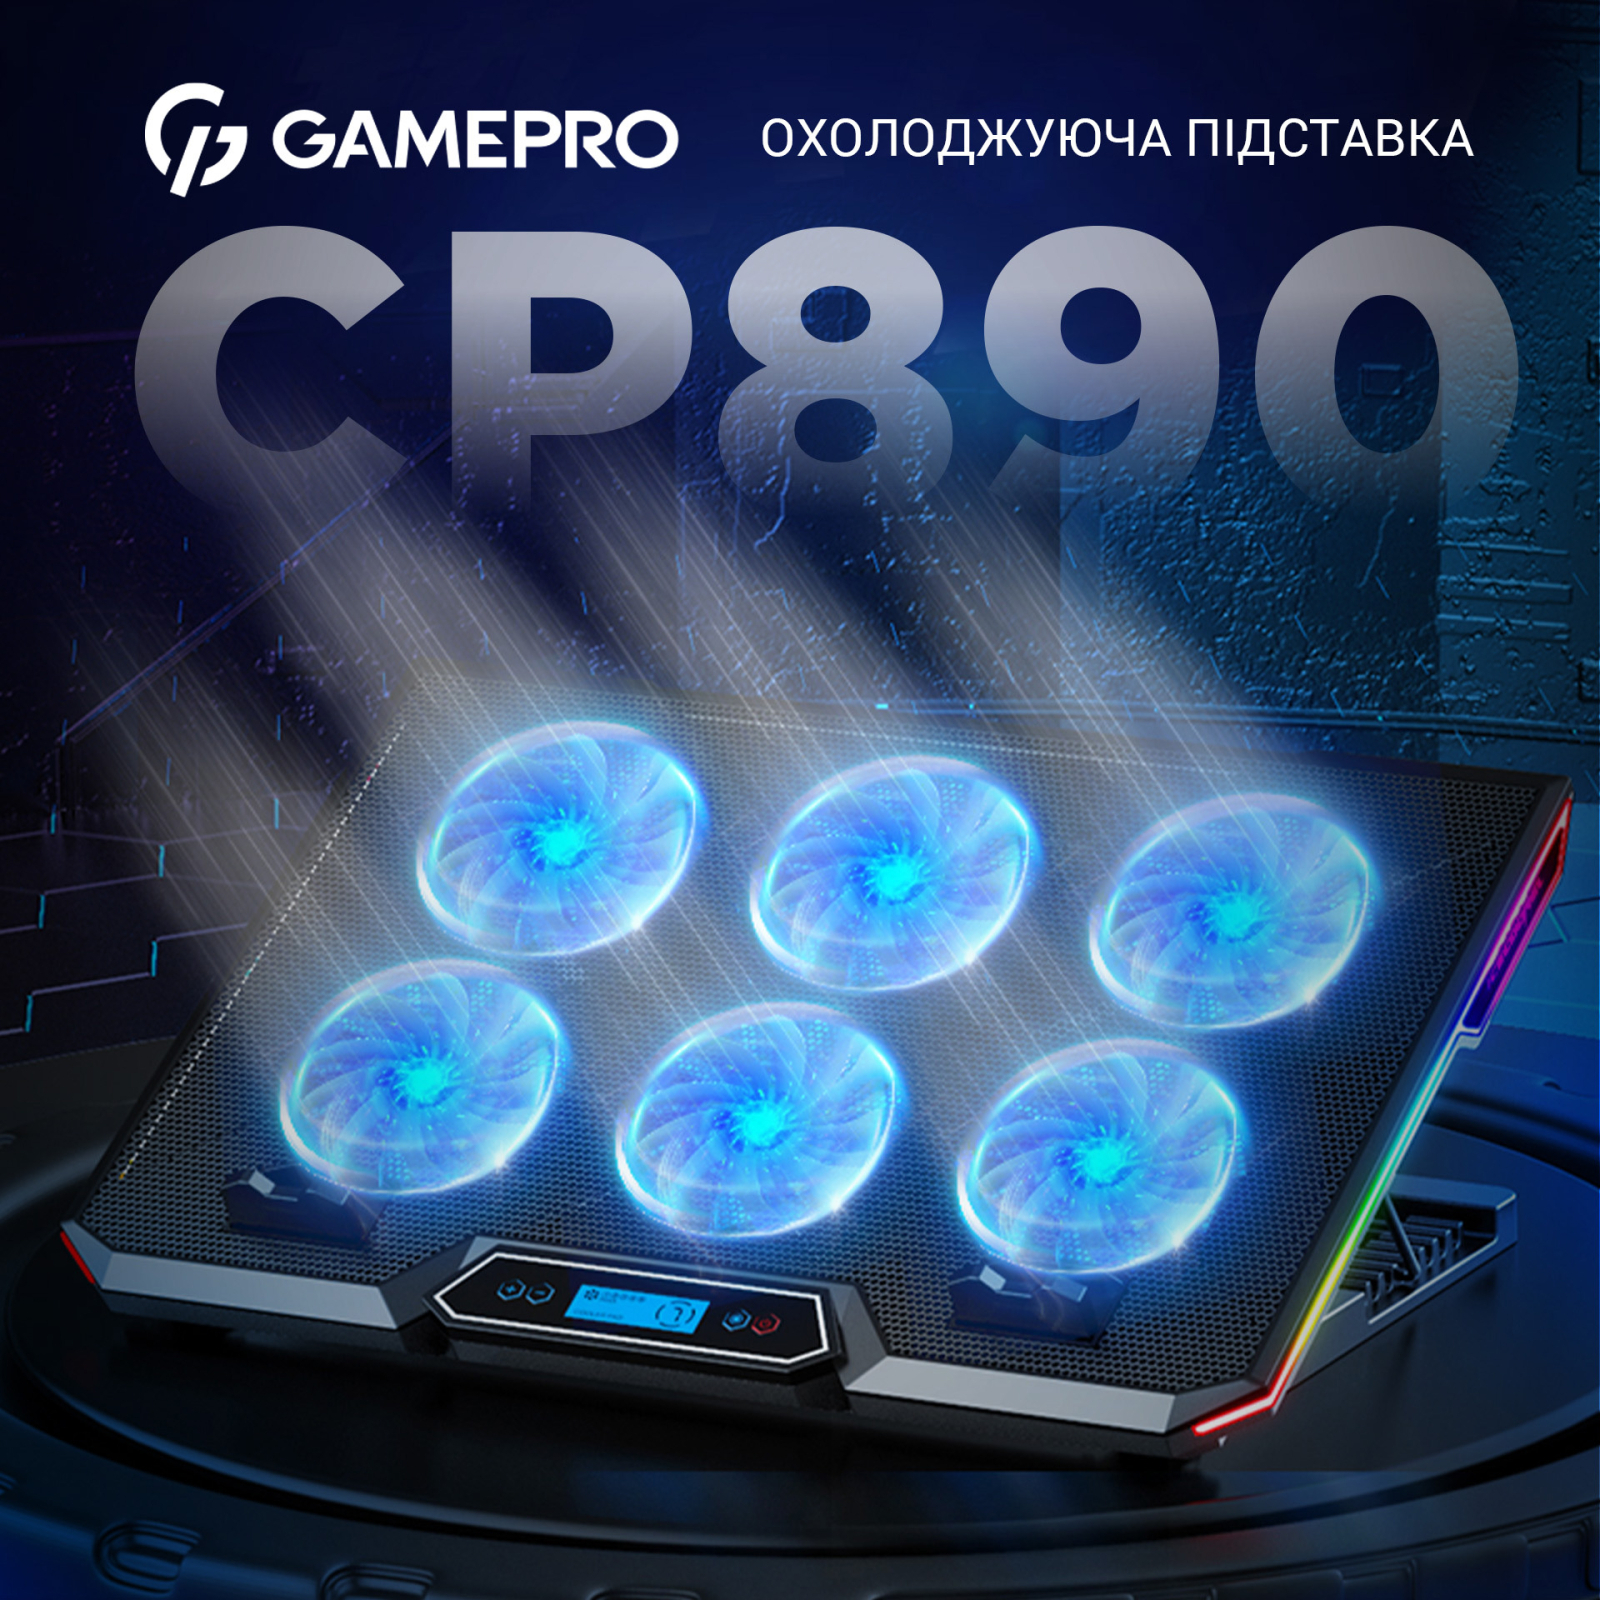 Підставка до ноутбука GamePro CP890 зображення 3